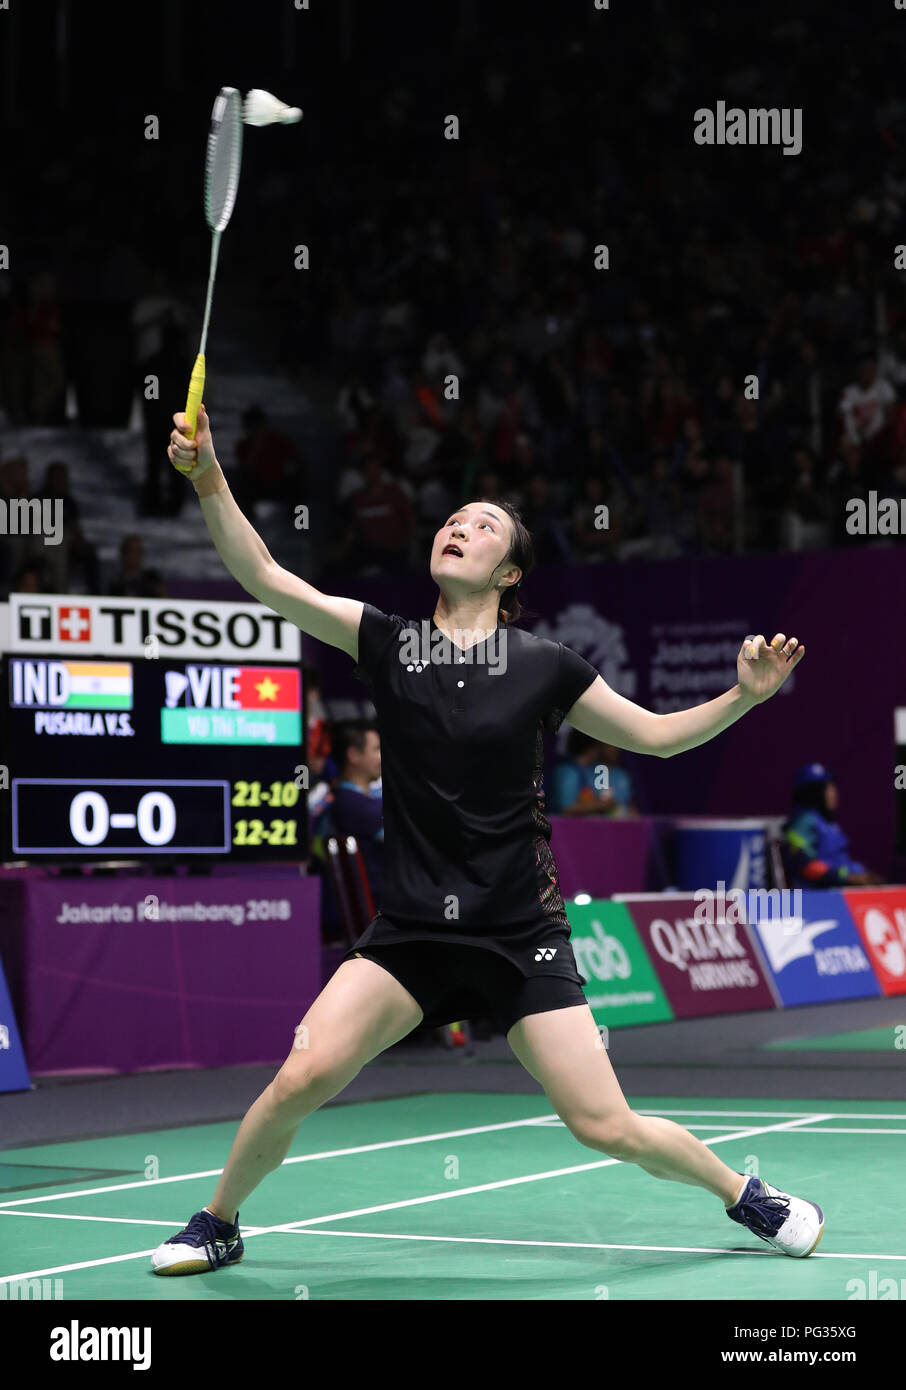 Jakarta, Indonésie, le 23 août 2018 : Badminton : Vietnam's Thi Trang vu en action contre PV Sindhu SESHADRI SUKUMAR Crédit : Seshadri SUKUMAR/Alamy Live News Banque D'Images